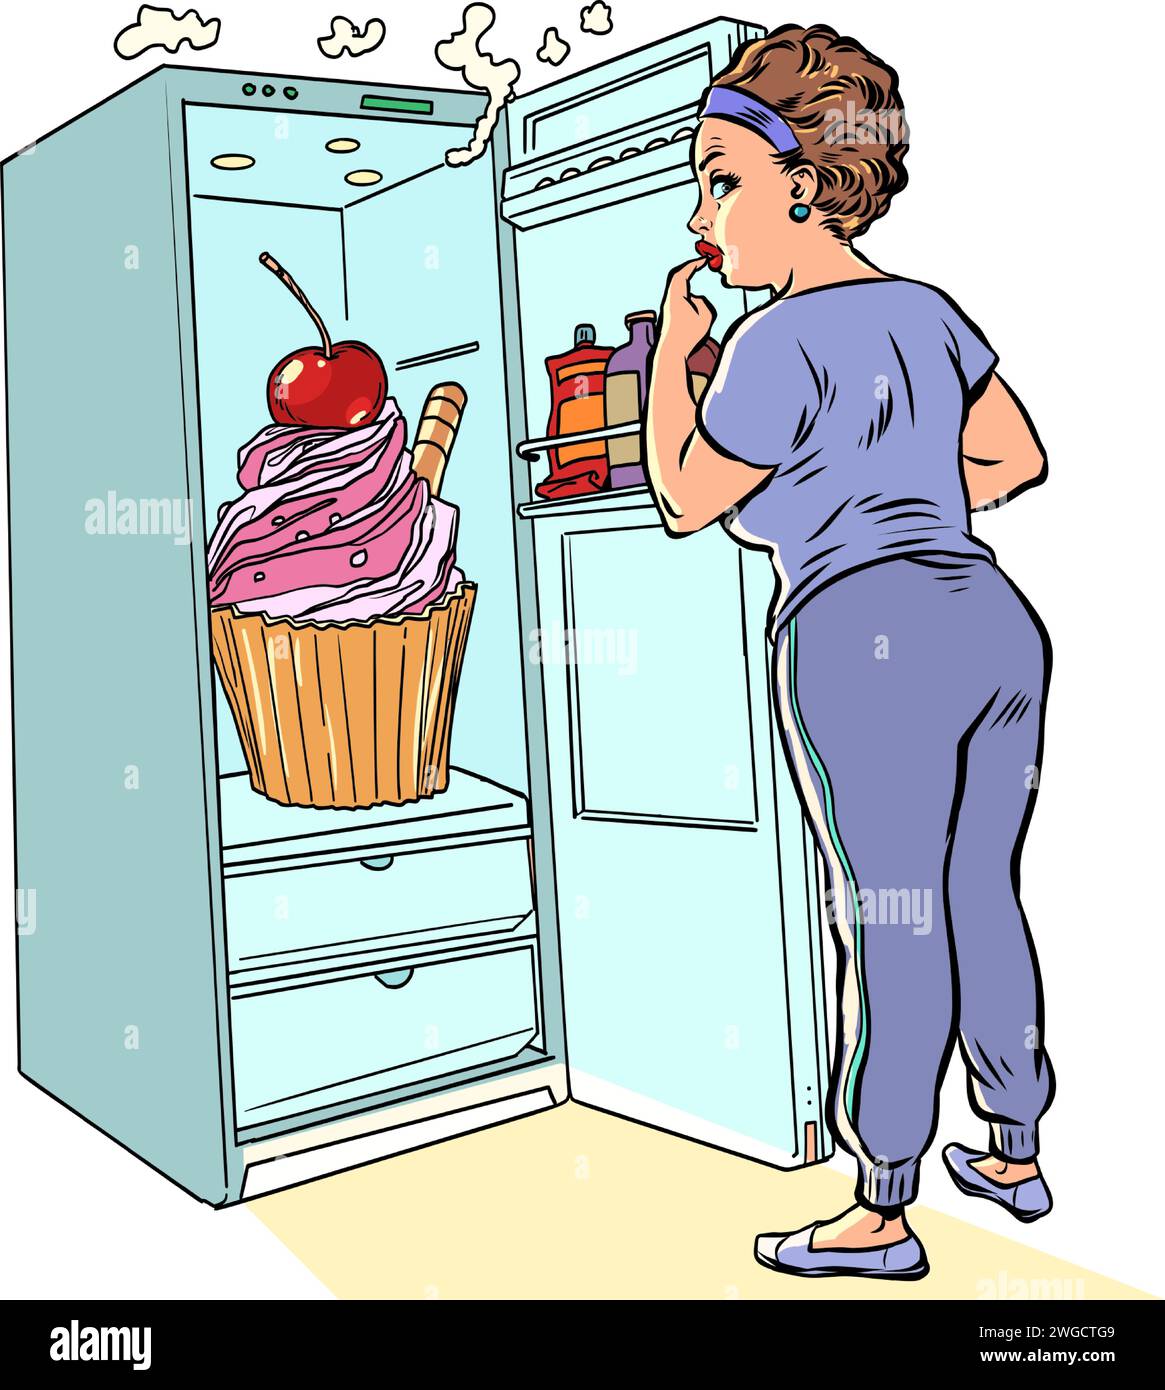 Versuche, die Abstoßung gegen Zucker einzudämmen. Das Mädchen öffnete den Kühlschrank, um ein köstliches Dessert zu essen. Frische und köstliche Kuchen und Gebäck Feinkost Stock Vektor